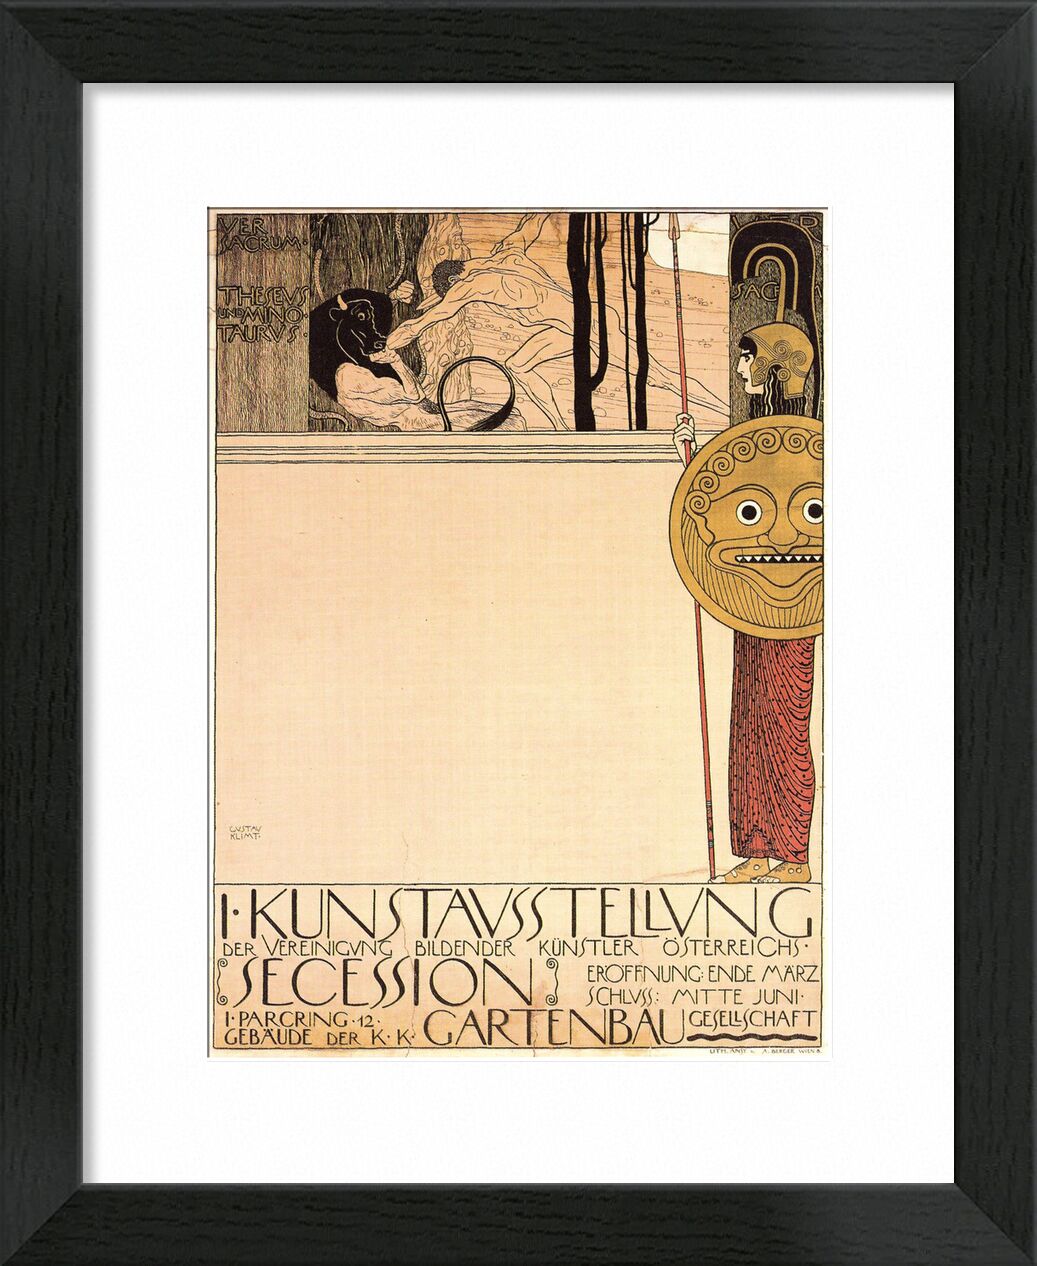 Poster for the First Art Exhibition of the Secession Art Movement, 1898 - Gustav Klimt von Bildende Kunst, Prodi Art, Zeichnung, Bewegung, Ausstellung, Aufstecken, KLIMT